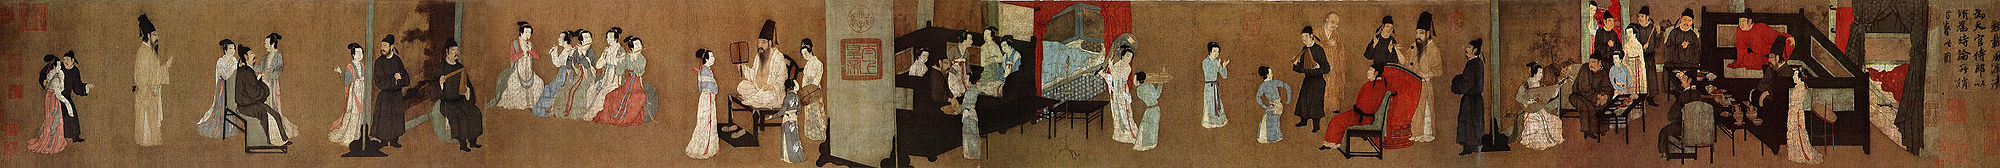 Nächtliche Feier des Han Xizai, von Gu Hongzhong (Bildanfang ganz rechts)